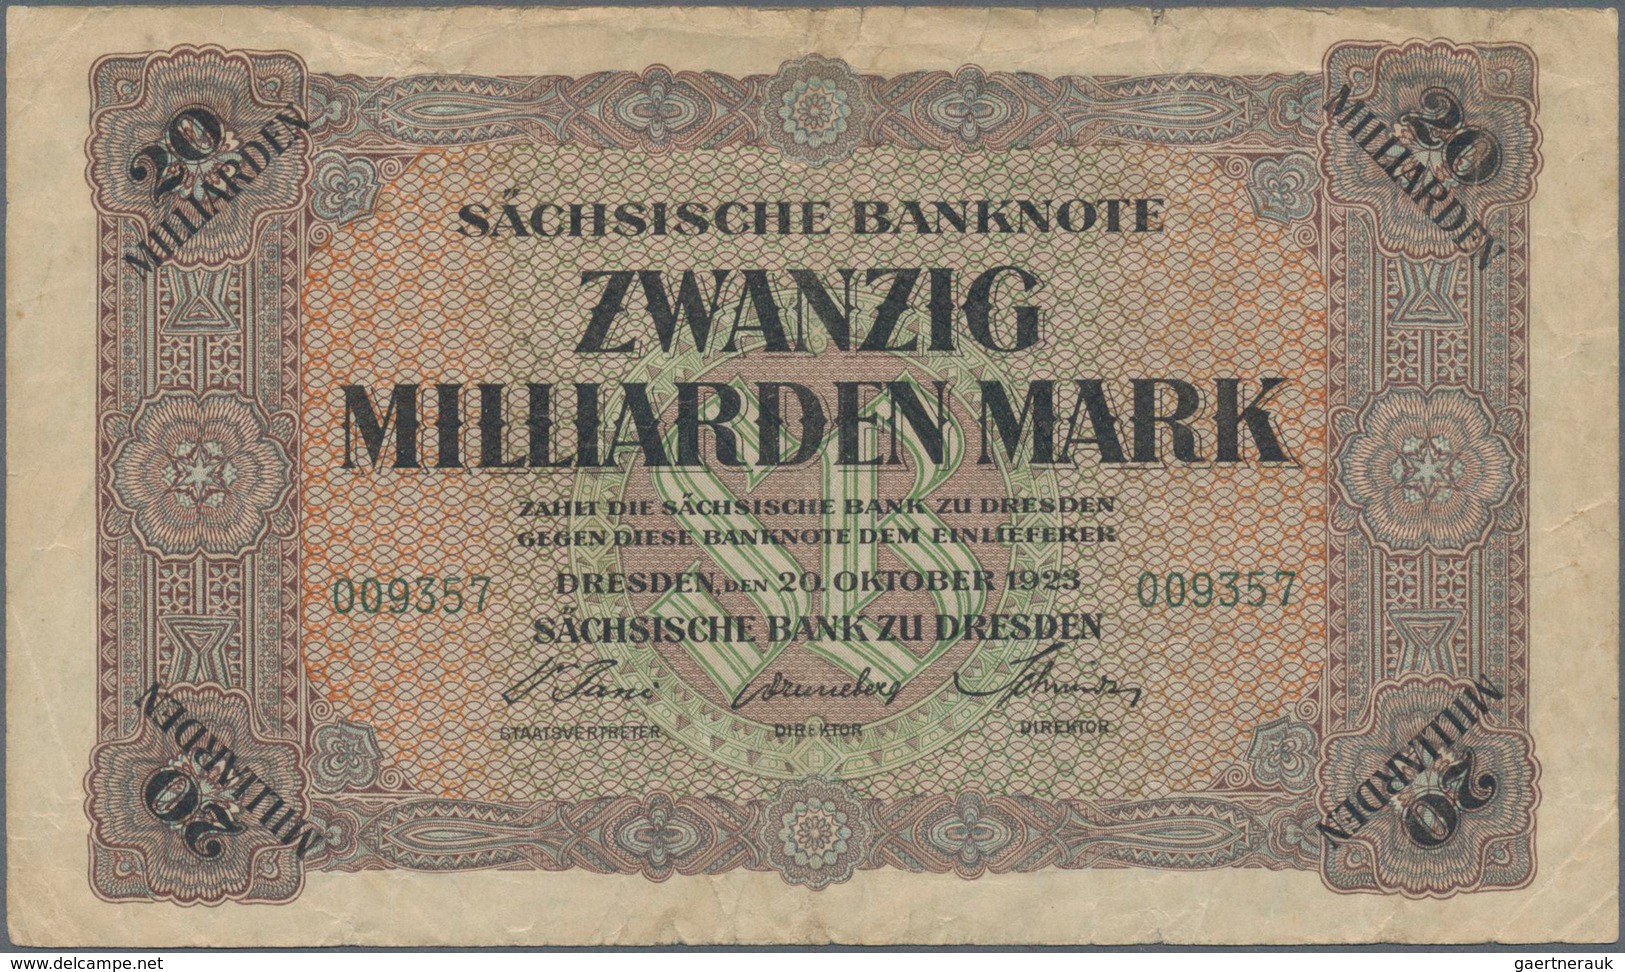 Deutschland - Länderscheine: Zwei Sammelalben mit zusammen 73 Banknoten der Länderbanken, dabei unte